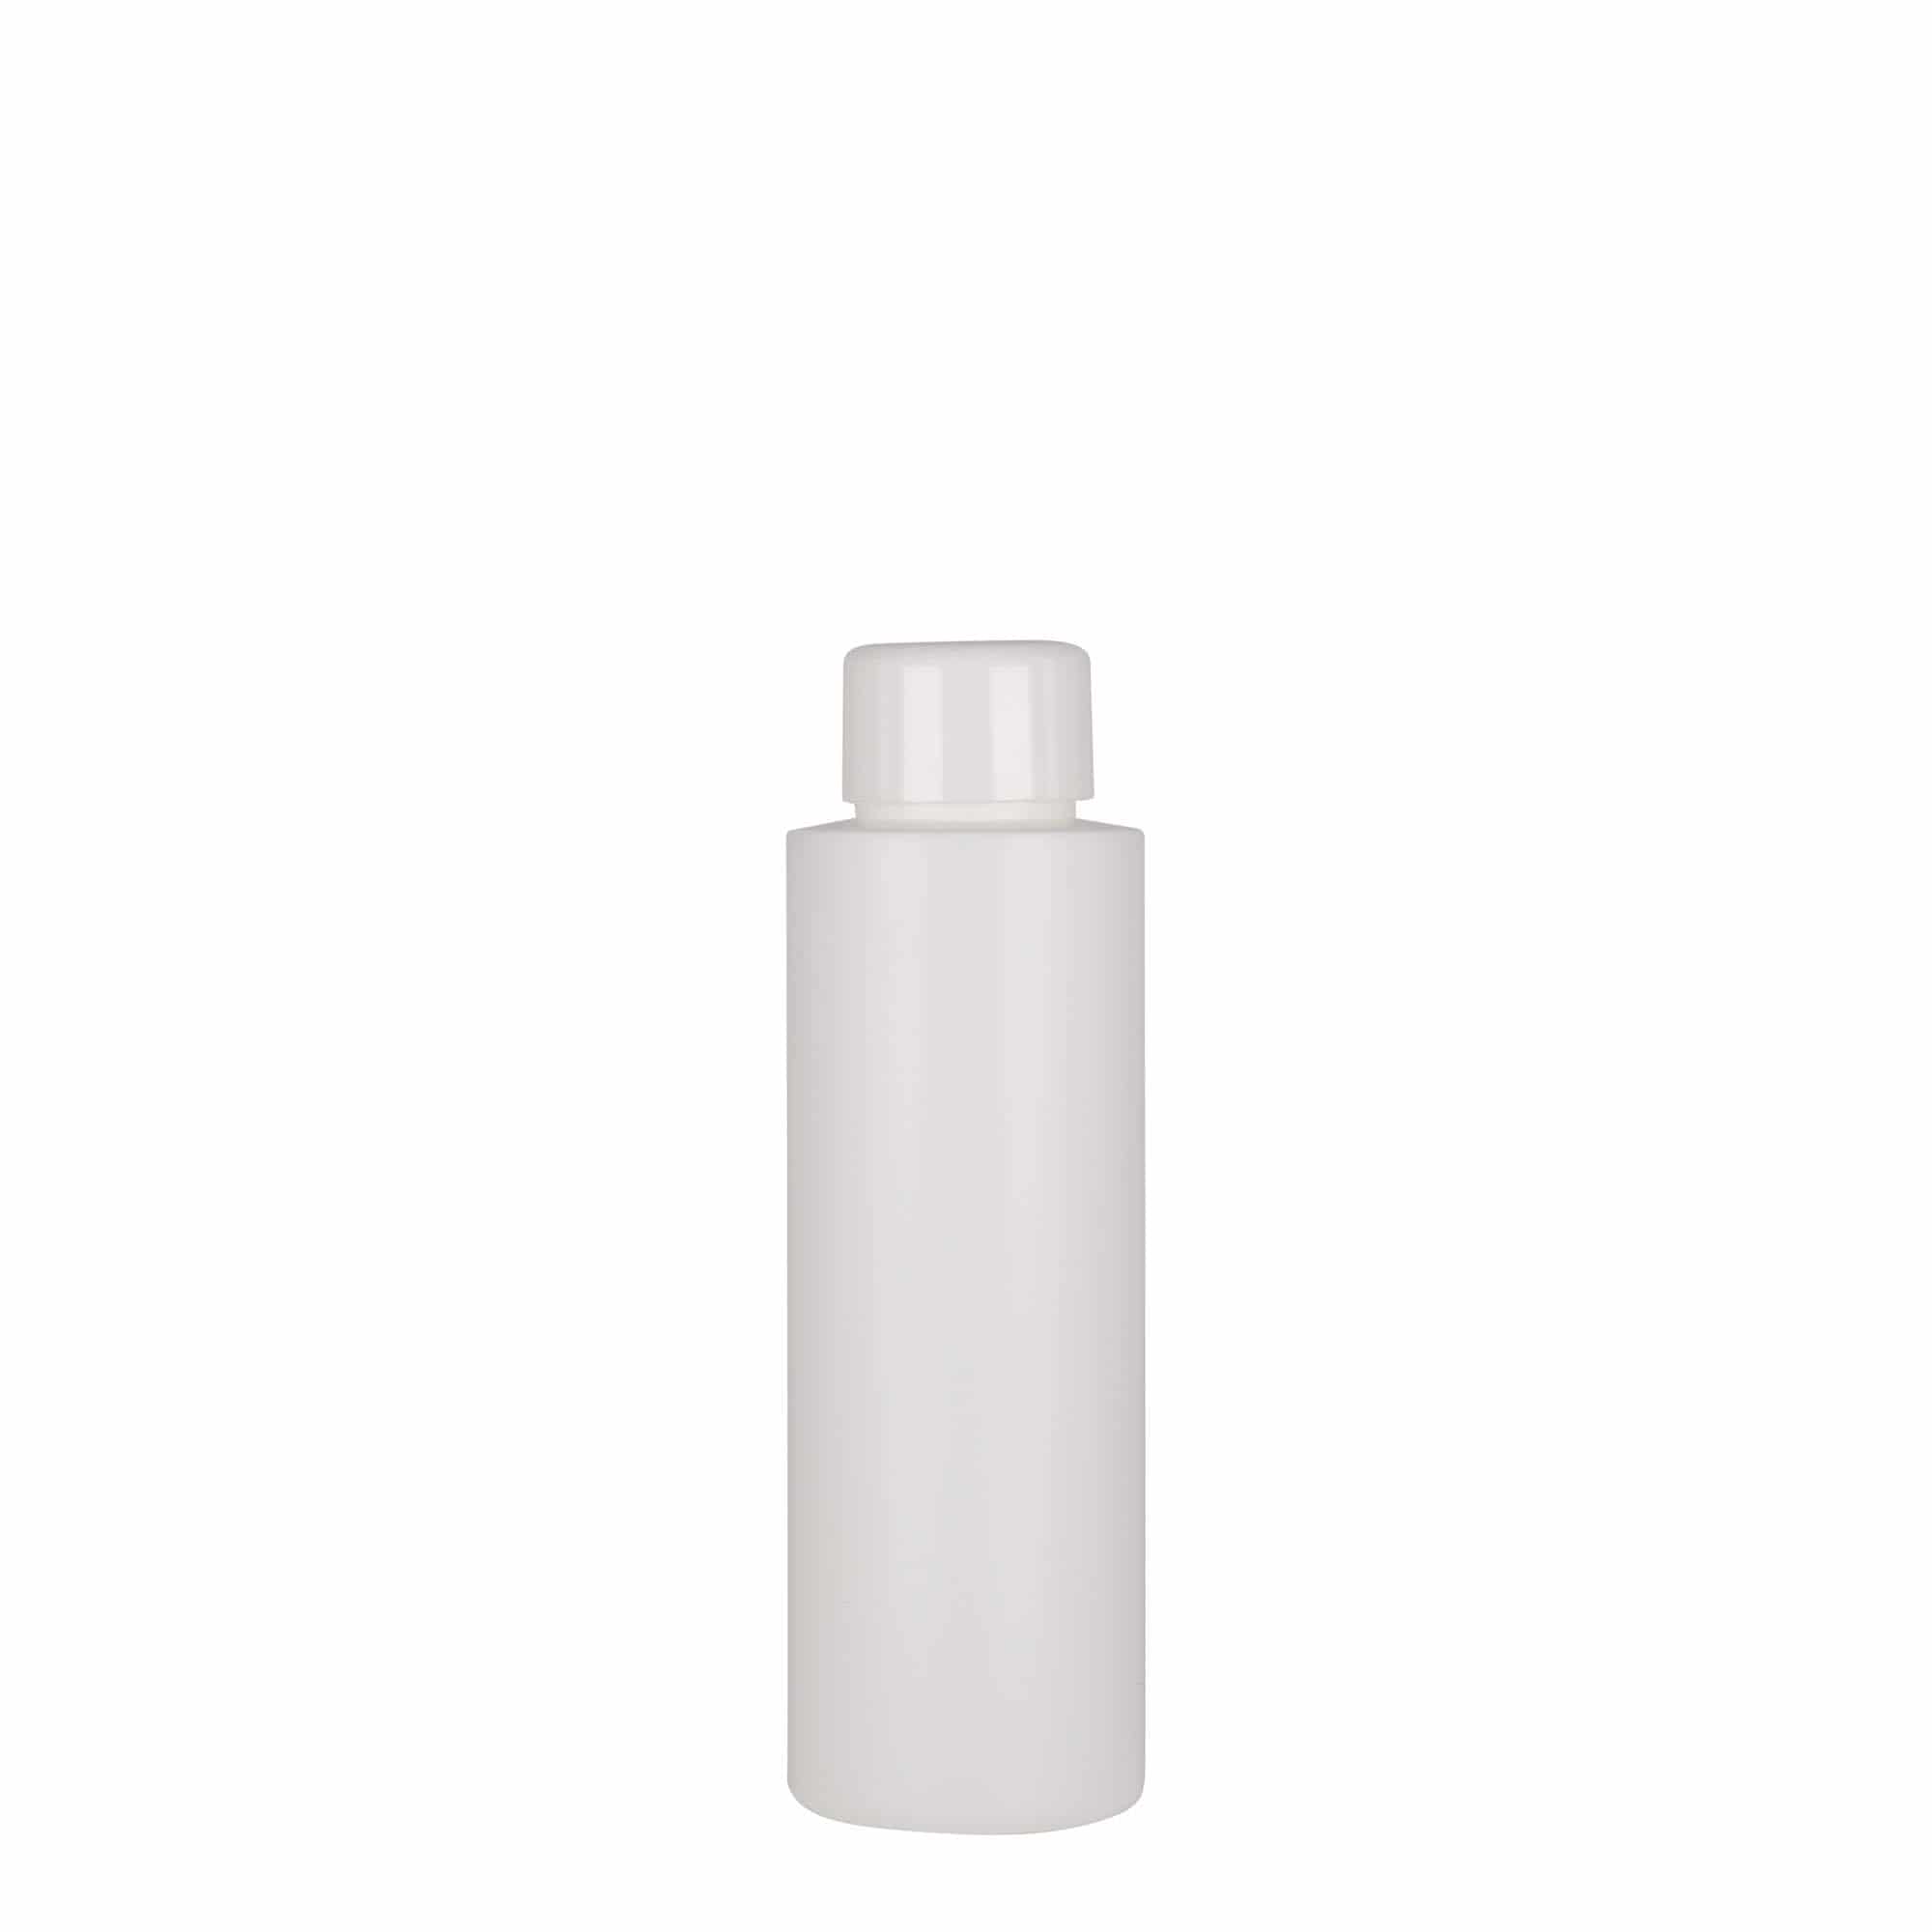 100 ml butelka z tworzywa sztucznego 'Pipe', HDPE, kolor biały, zamknięcie: GPI 24/410